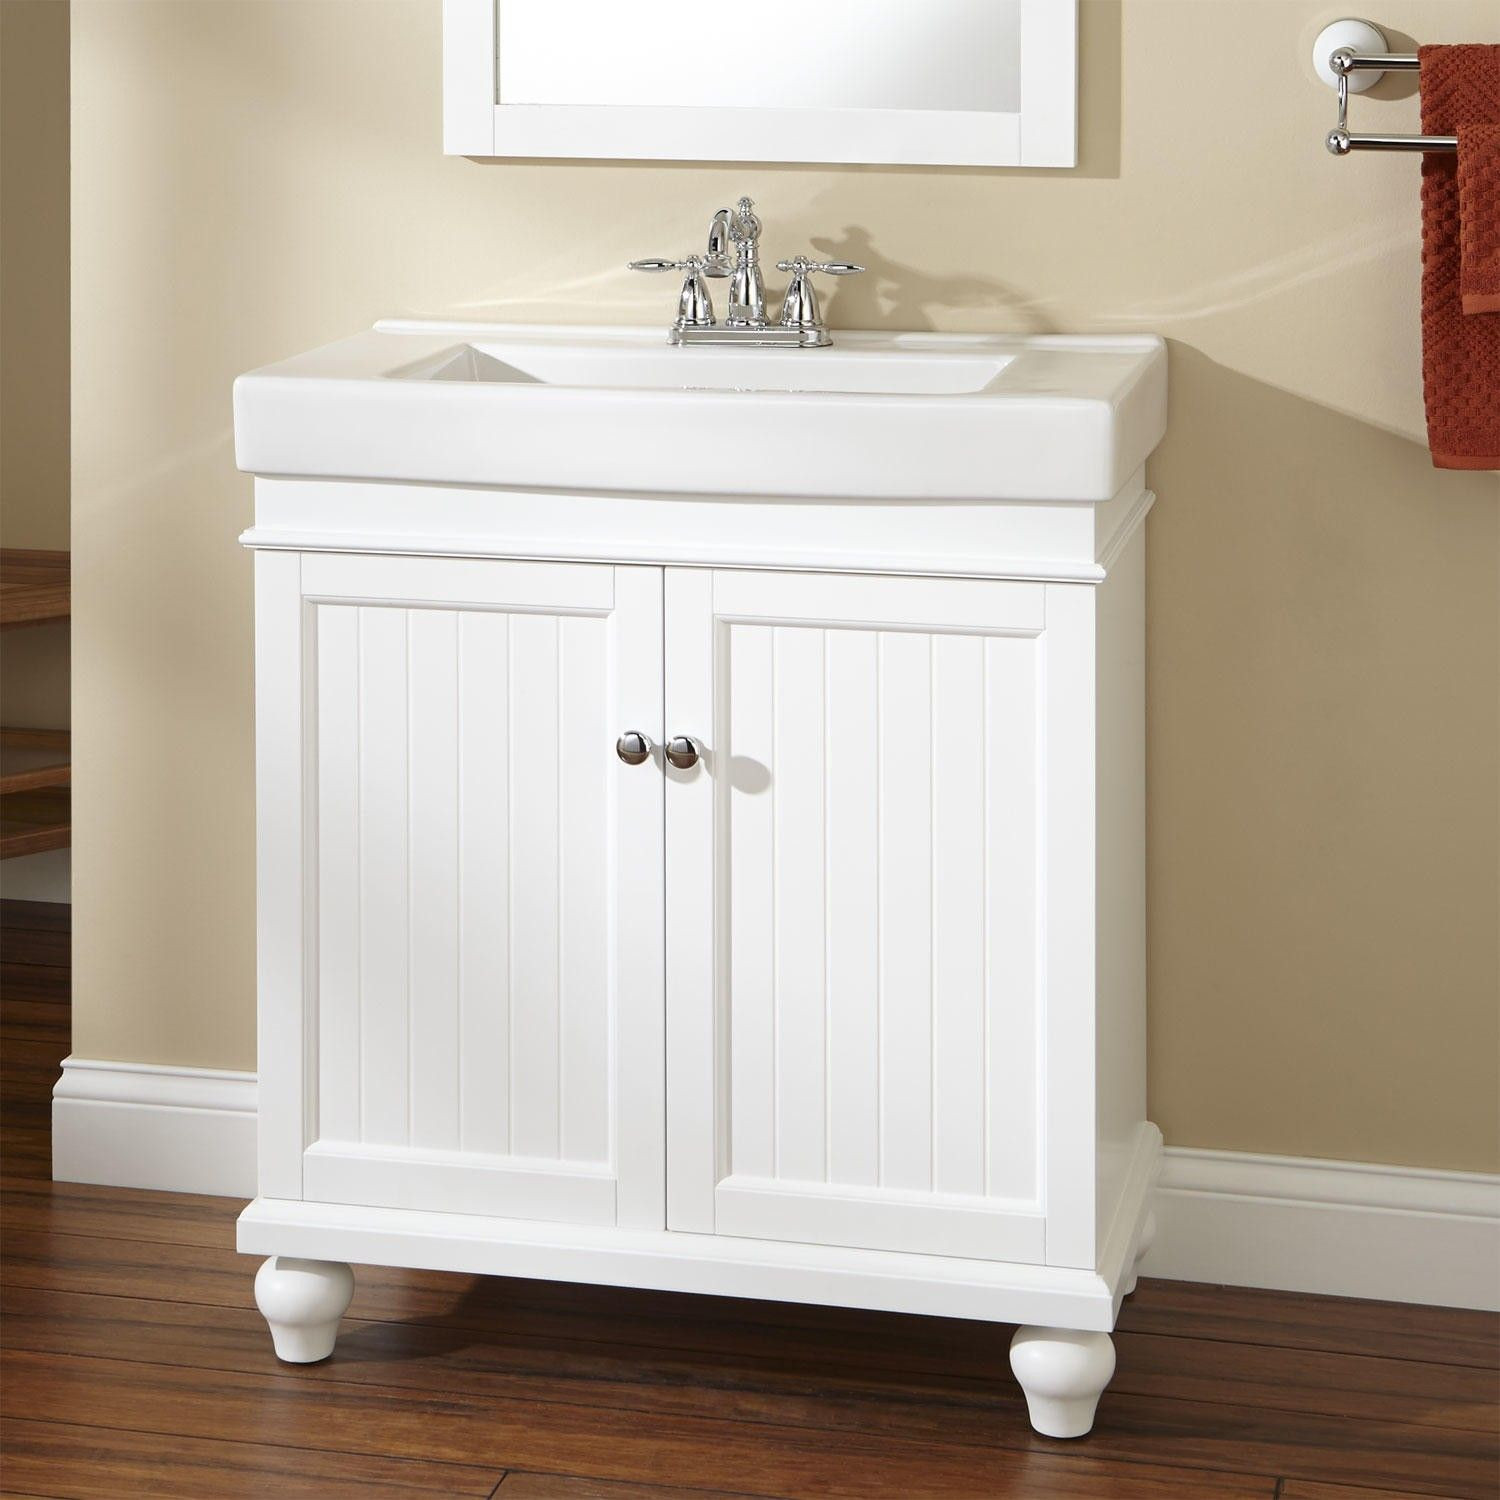 18 Inch Deep Bathroom Vanity
 30" Lander Vanity Cabinet White 16 inches deep